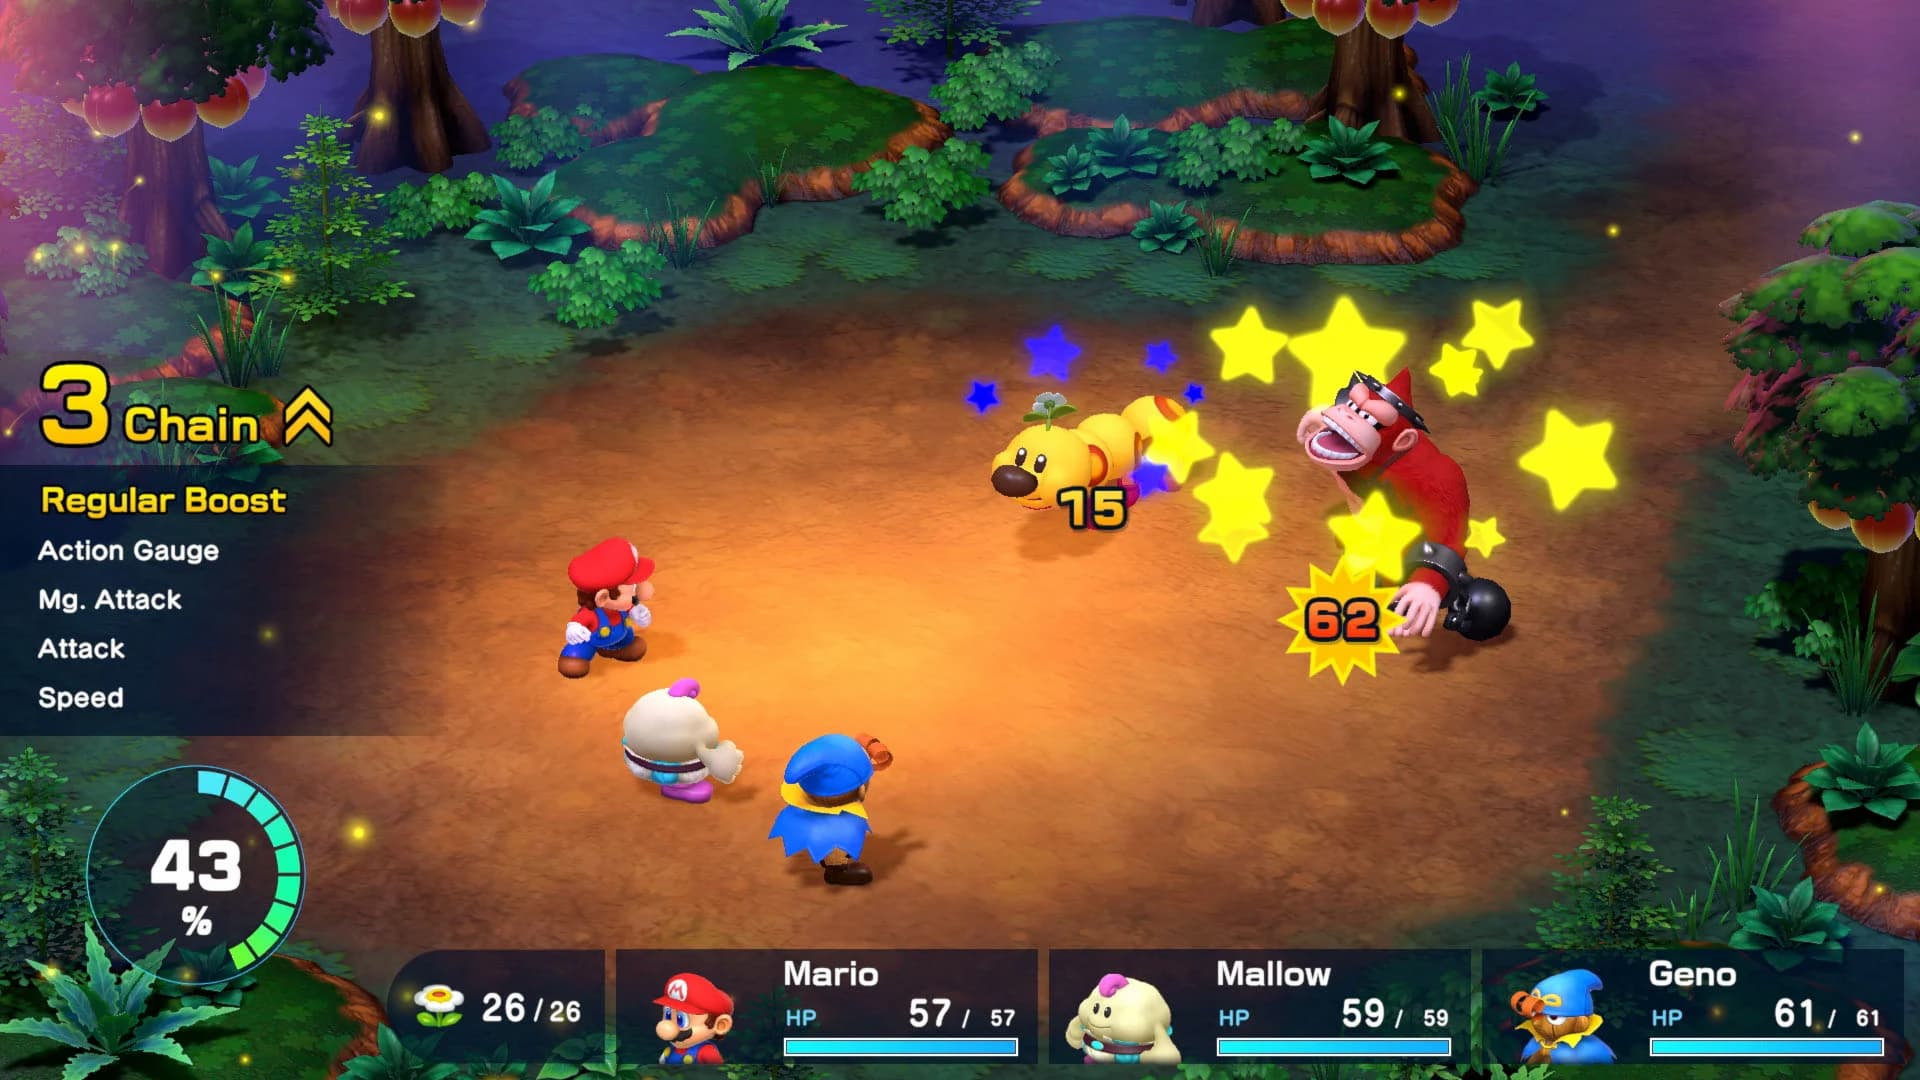 Super Mario RPG: opções para jogar enquanto espera o remake